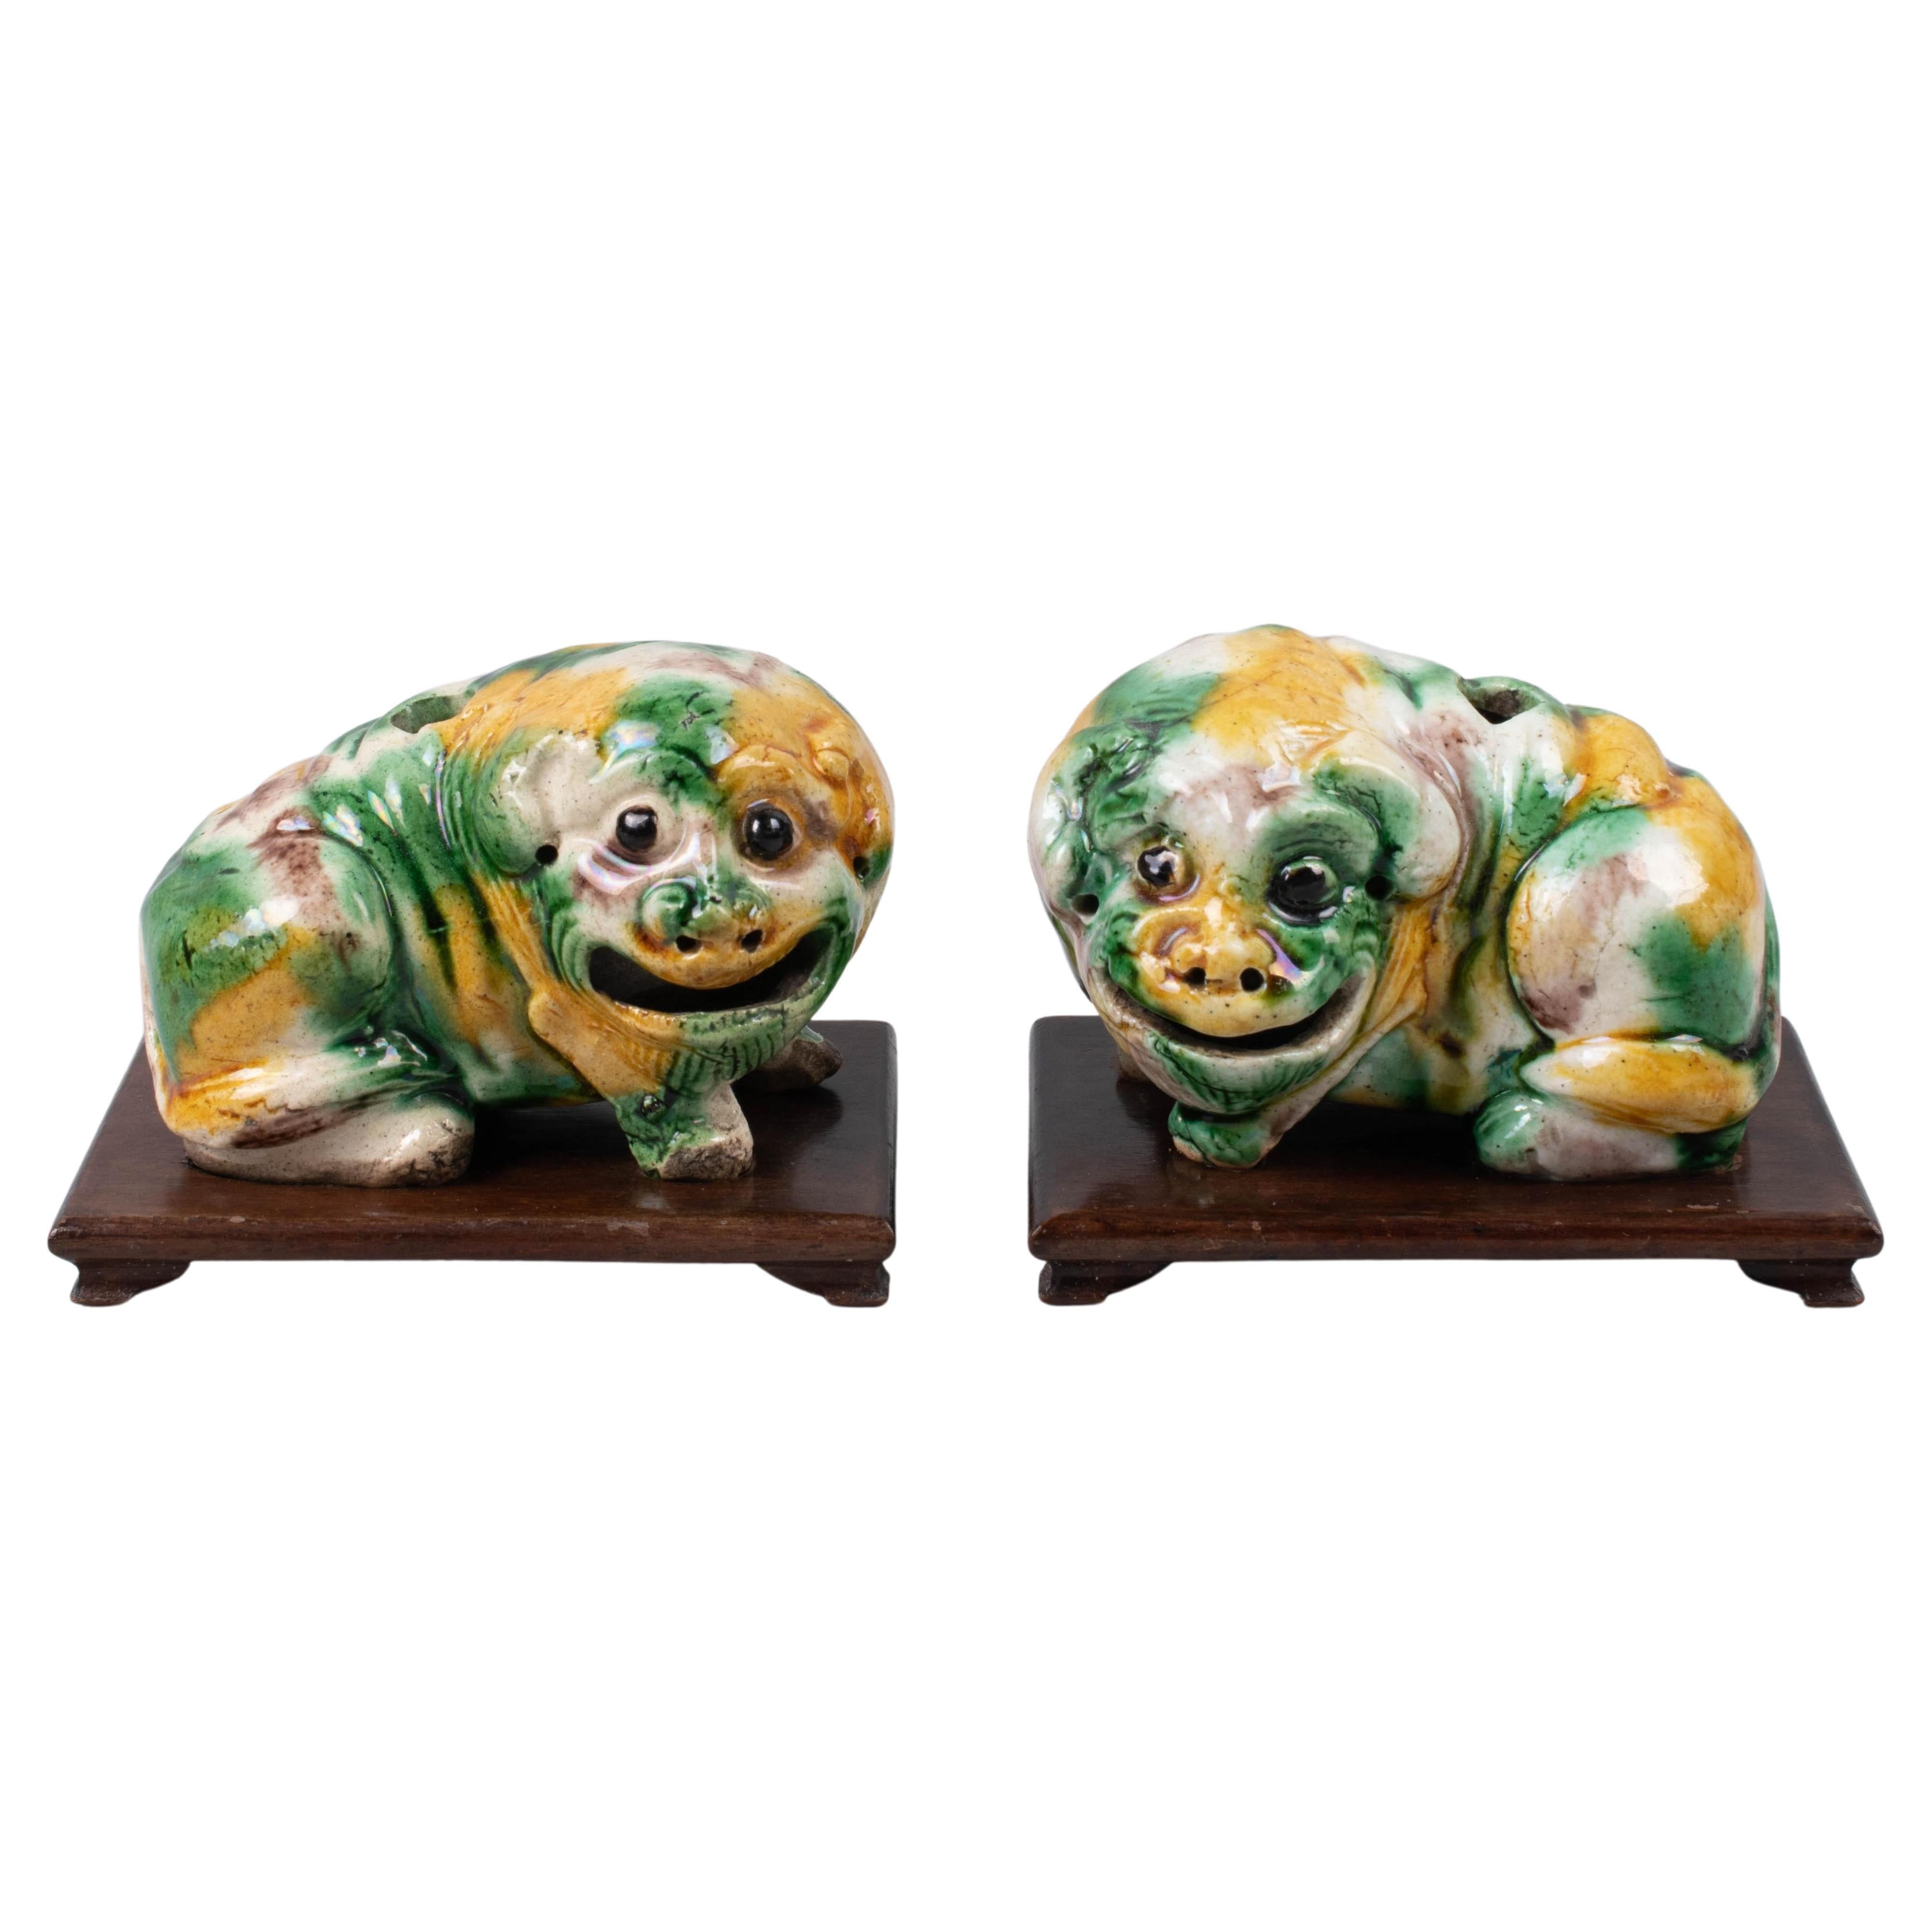 Dieses Paar kleiner chinesischer Shar Pei Welpen stammt aus der Mitte des 19. Jahrhunderts, etwa aus dem Jahr 1860.                
Sie sind charmante Geschöpfe mit liebenswerten Gesichtern. 
Sie sind mit der traditionellen dreifarbigen gelben,